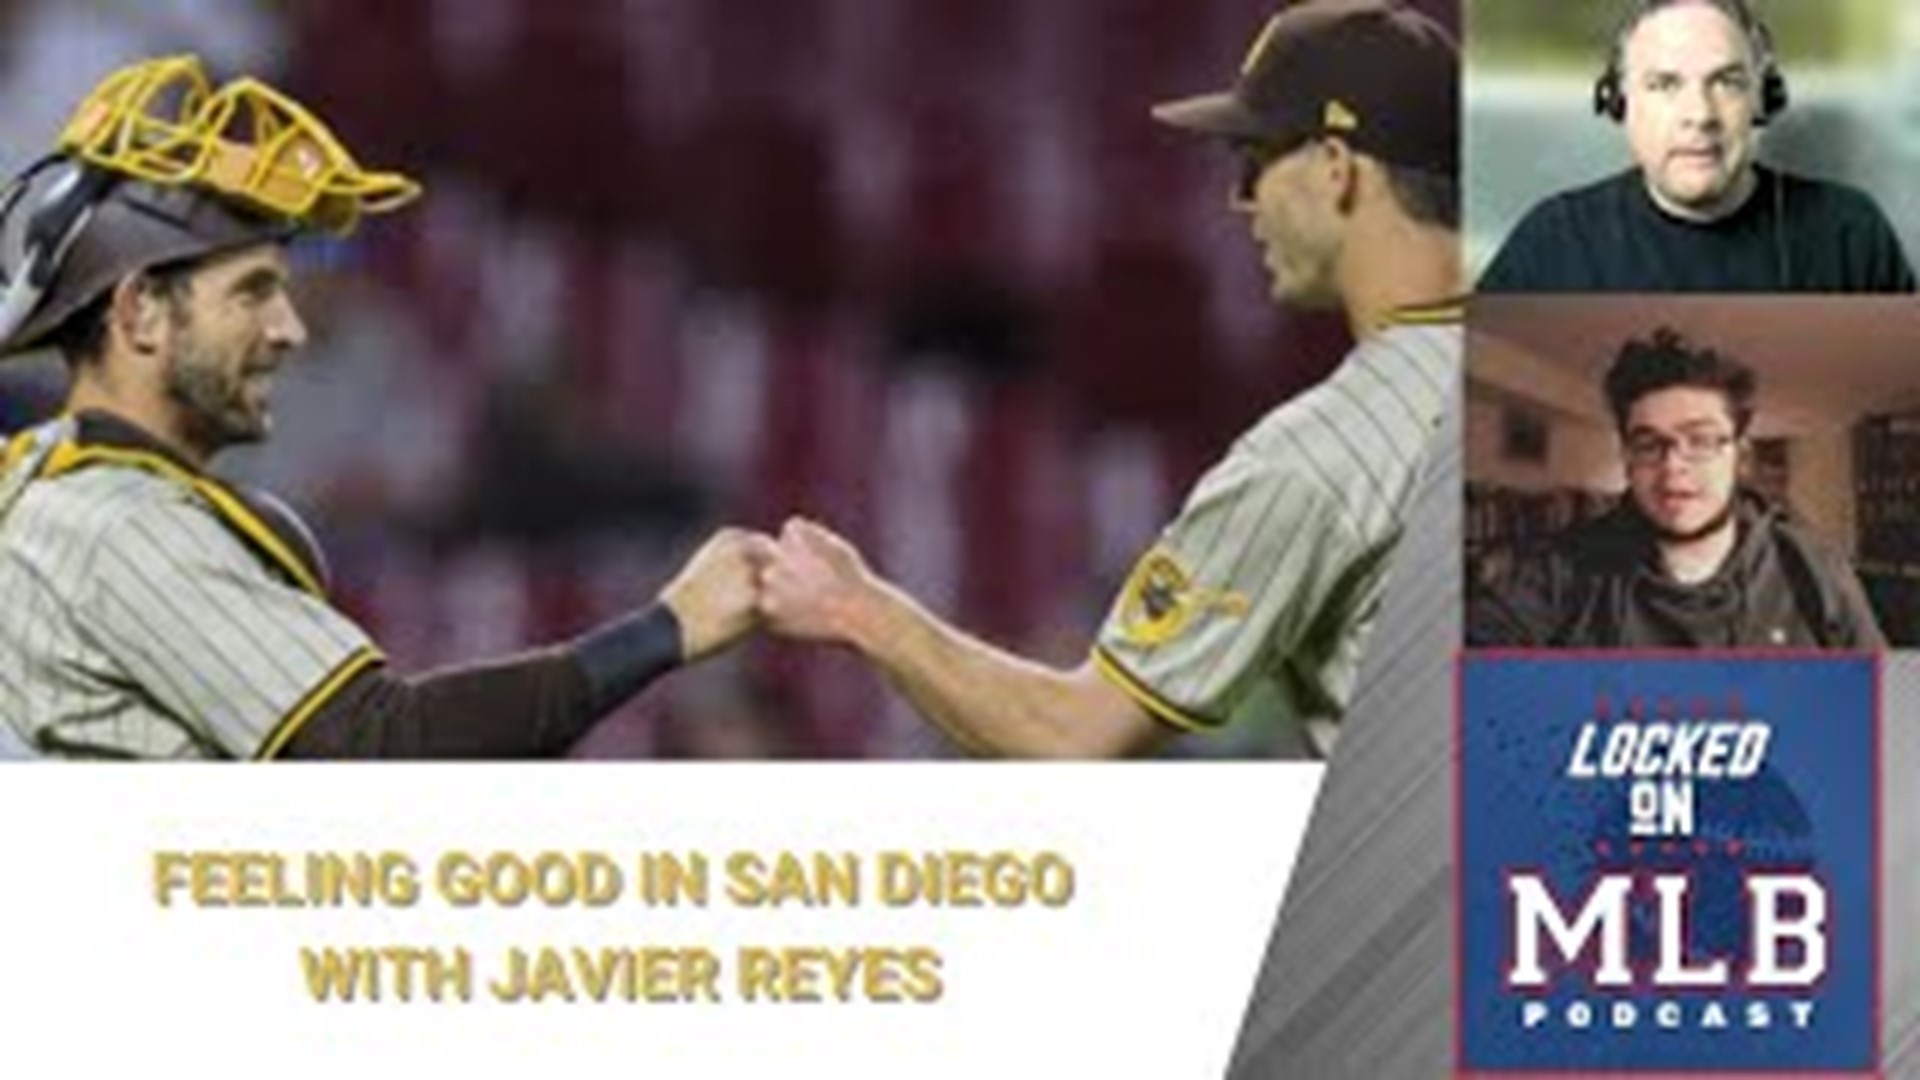 Good Feelings in San Diego with Javier Reyes - Locked on MLB - May 20, 2022